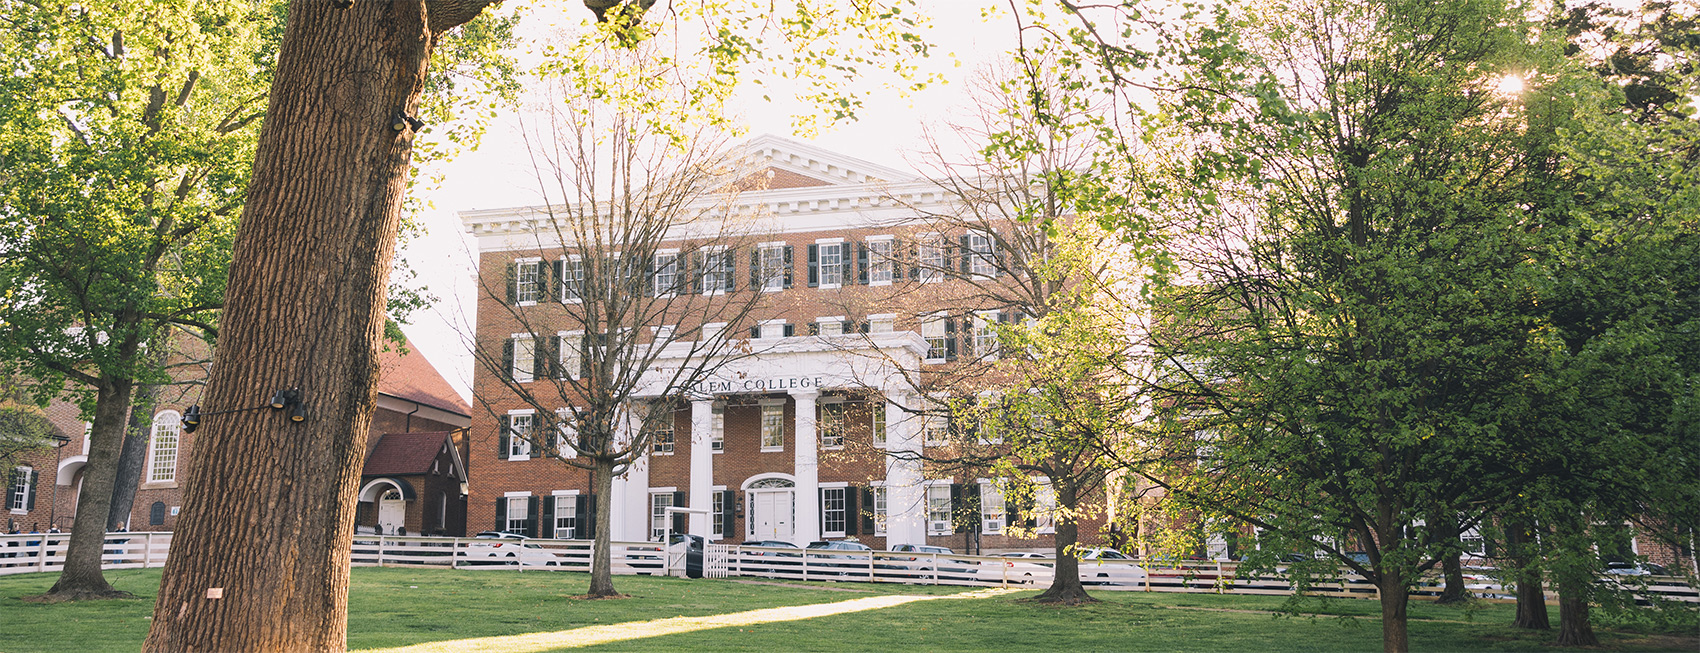 Salem College Landscape